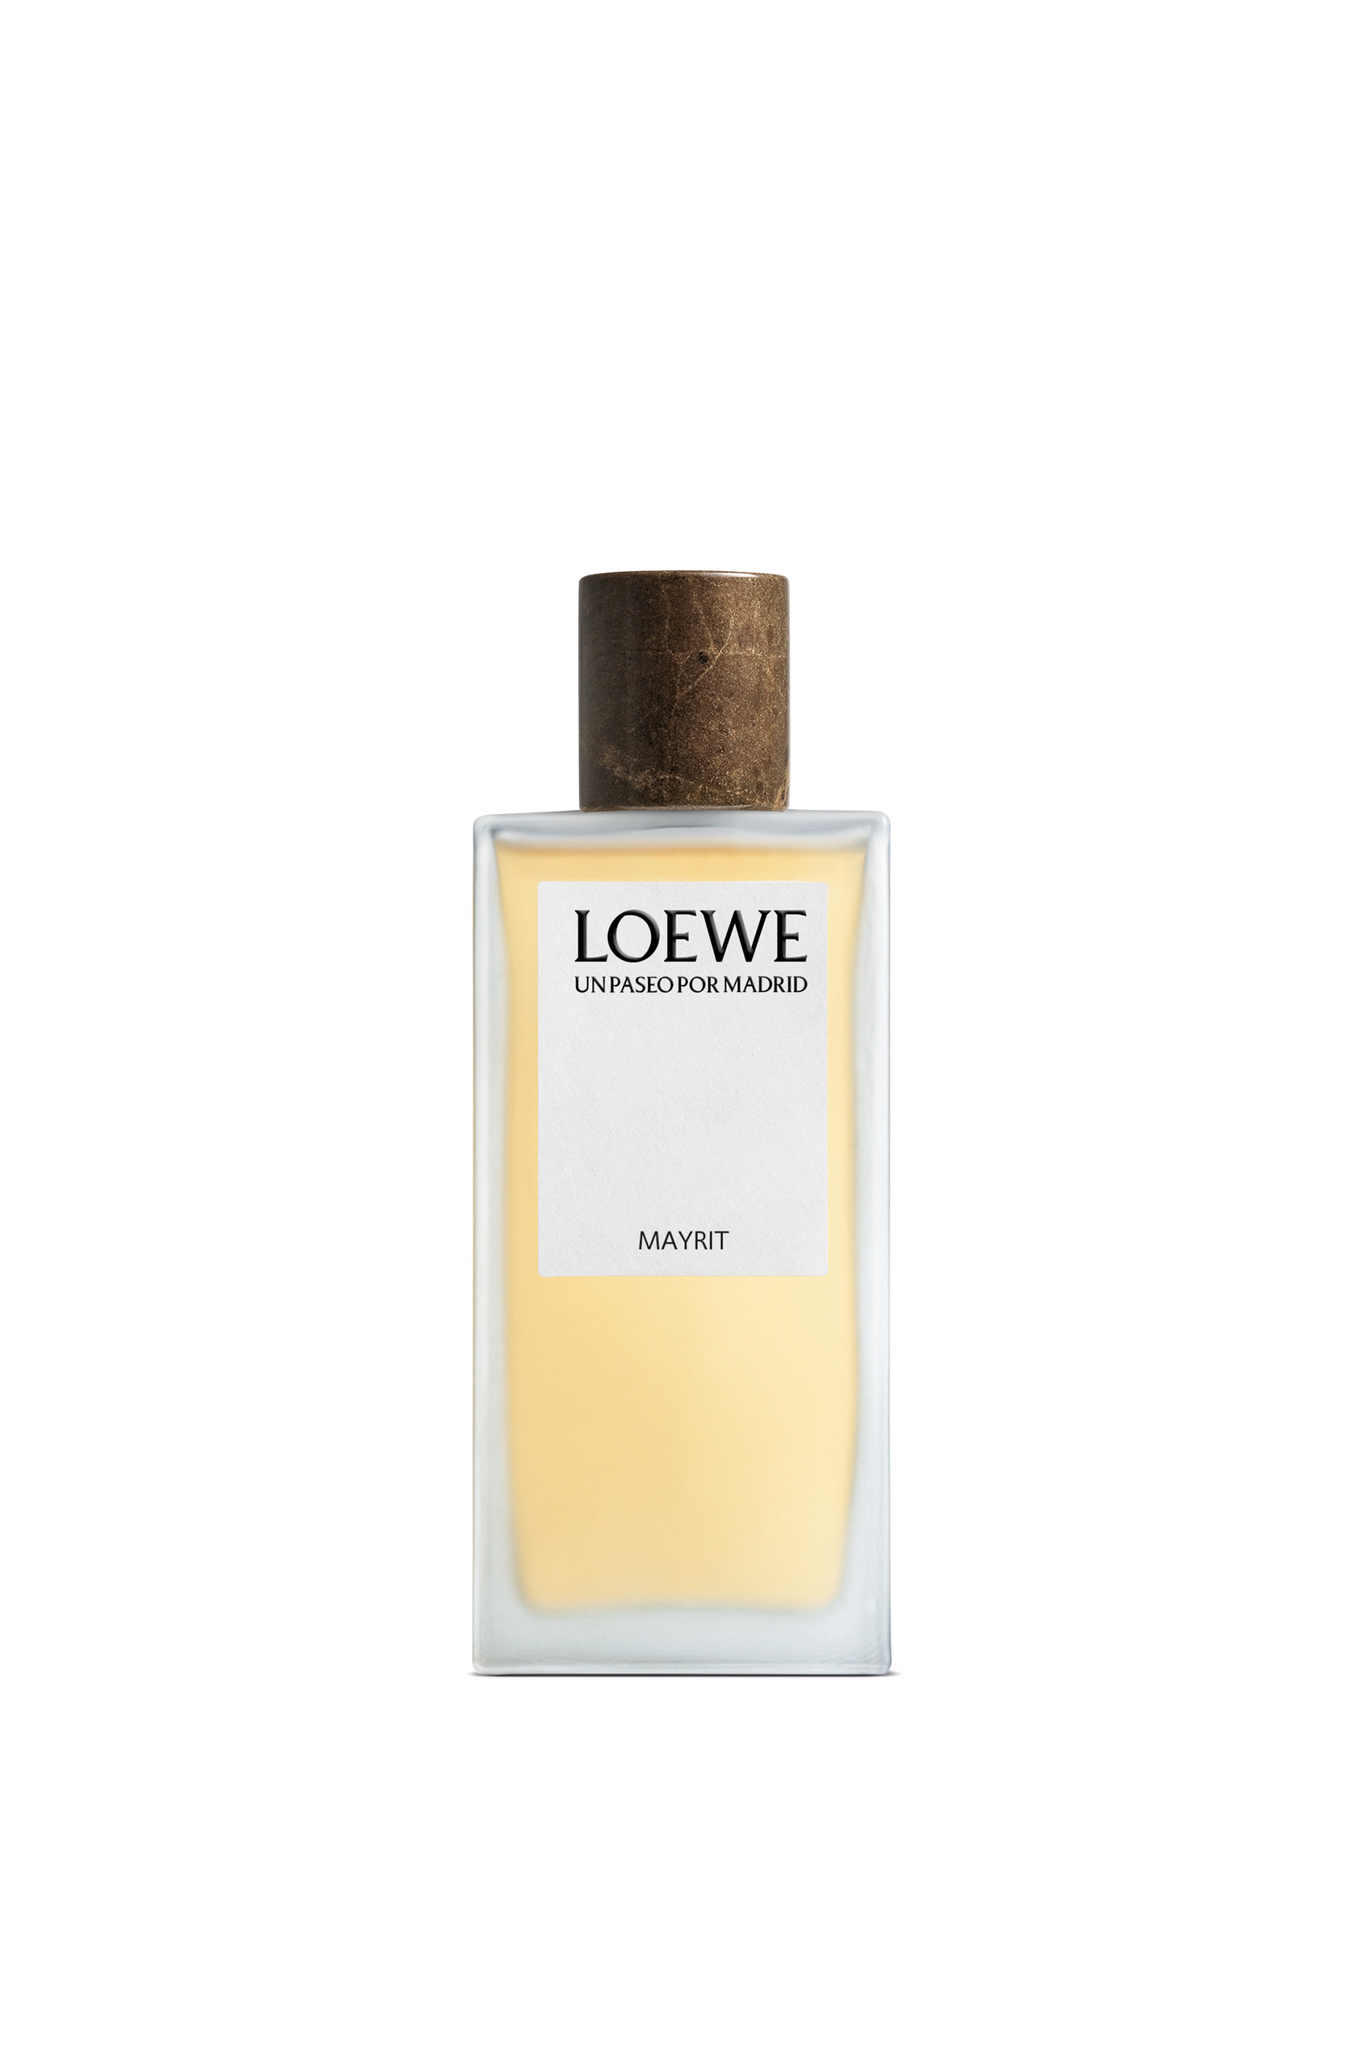 Hemos seleccionado nuestros perfumes favoritos para este verano con un toque de azahar: Un Paseo por Madrid Mayrit de Loewe